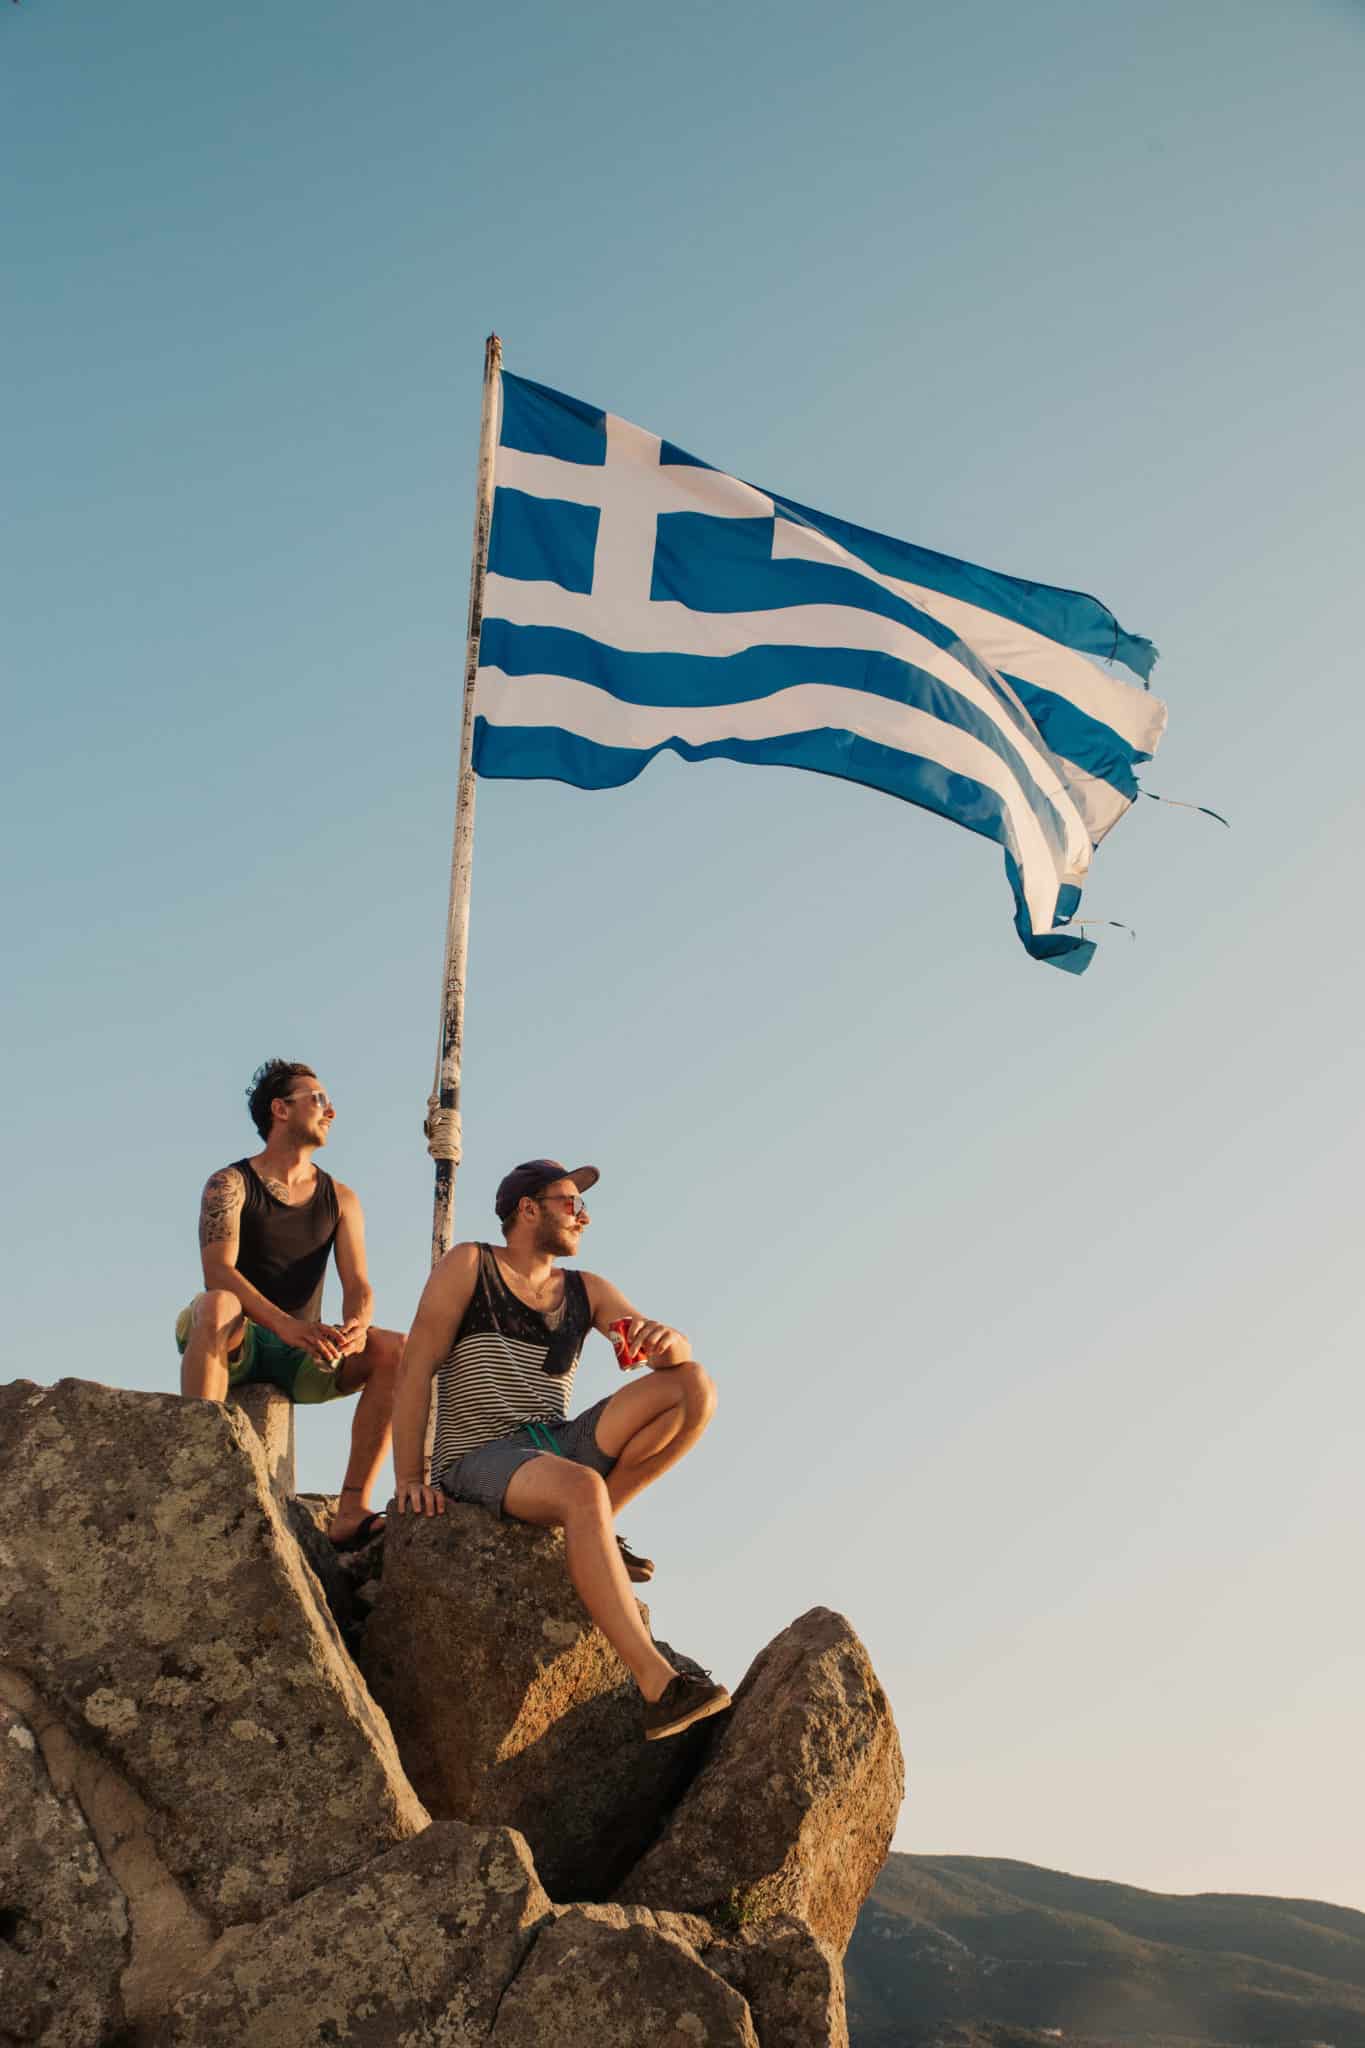 Zwei Menschen sitzen auf einem Felsvorsprung, genießen die Aussicht neben einer wehenden griechischen Flagge an einem Mast in einer ruhigen Umgebung im Freien während des Sonnenuntergangs und warten auf ihr Segelabenteuer.